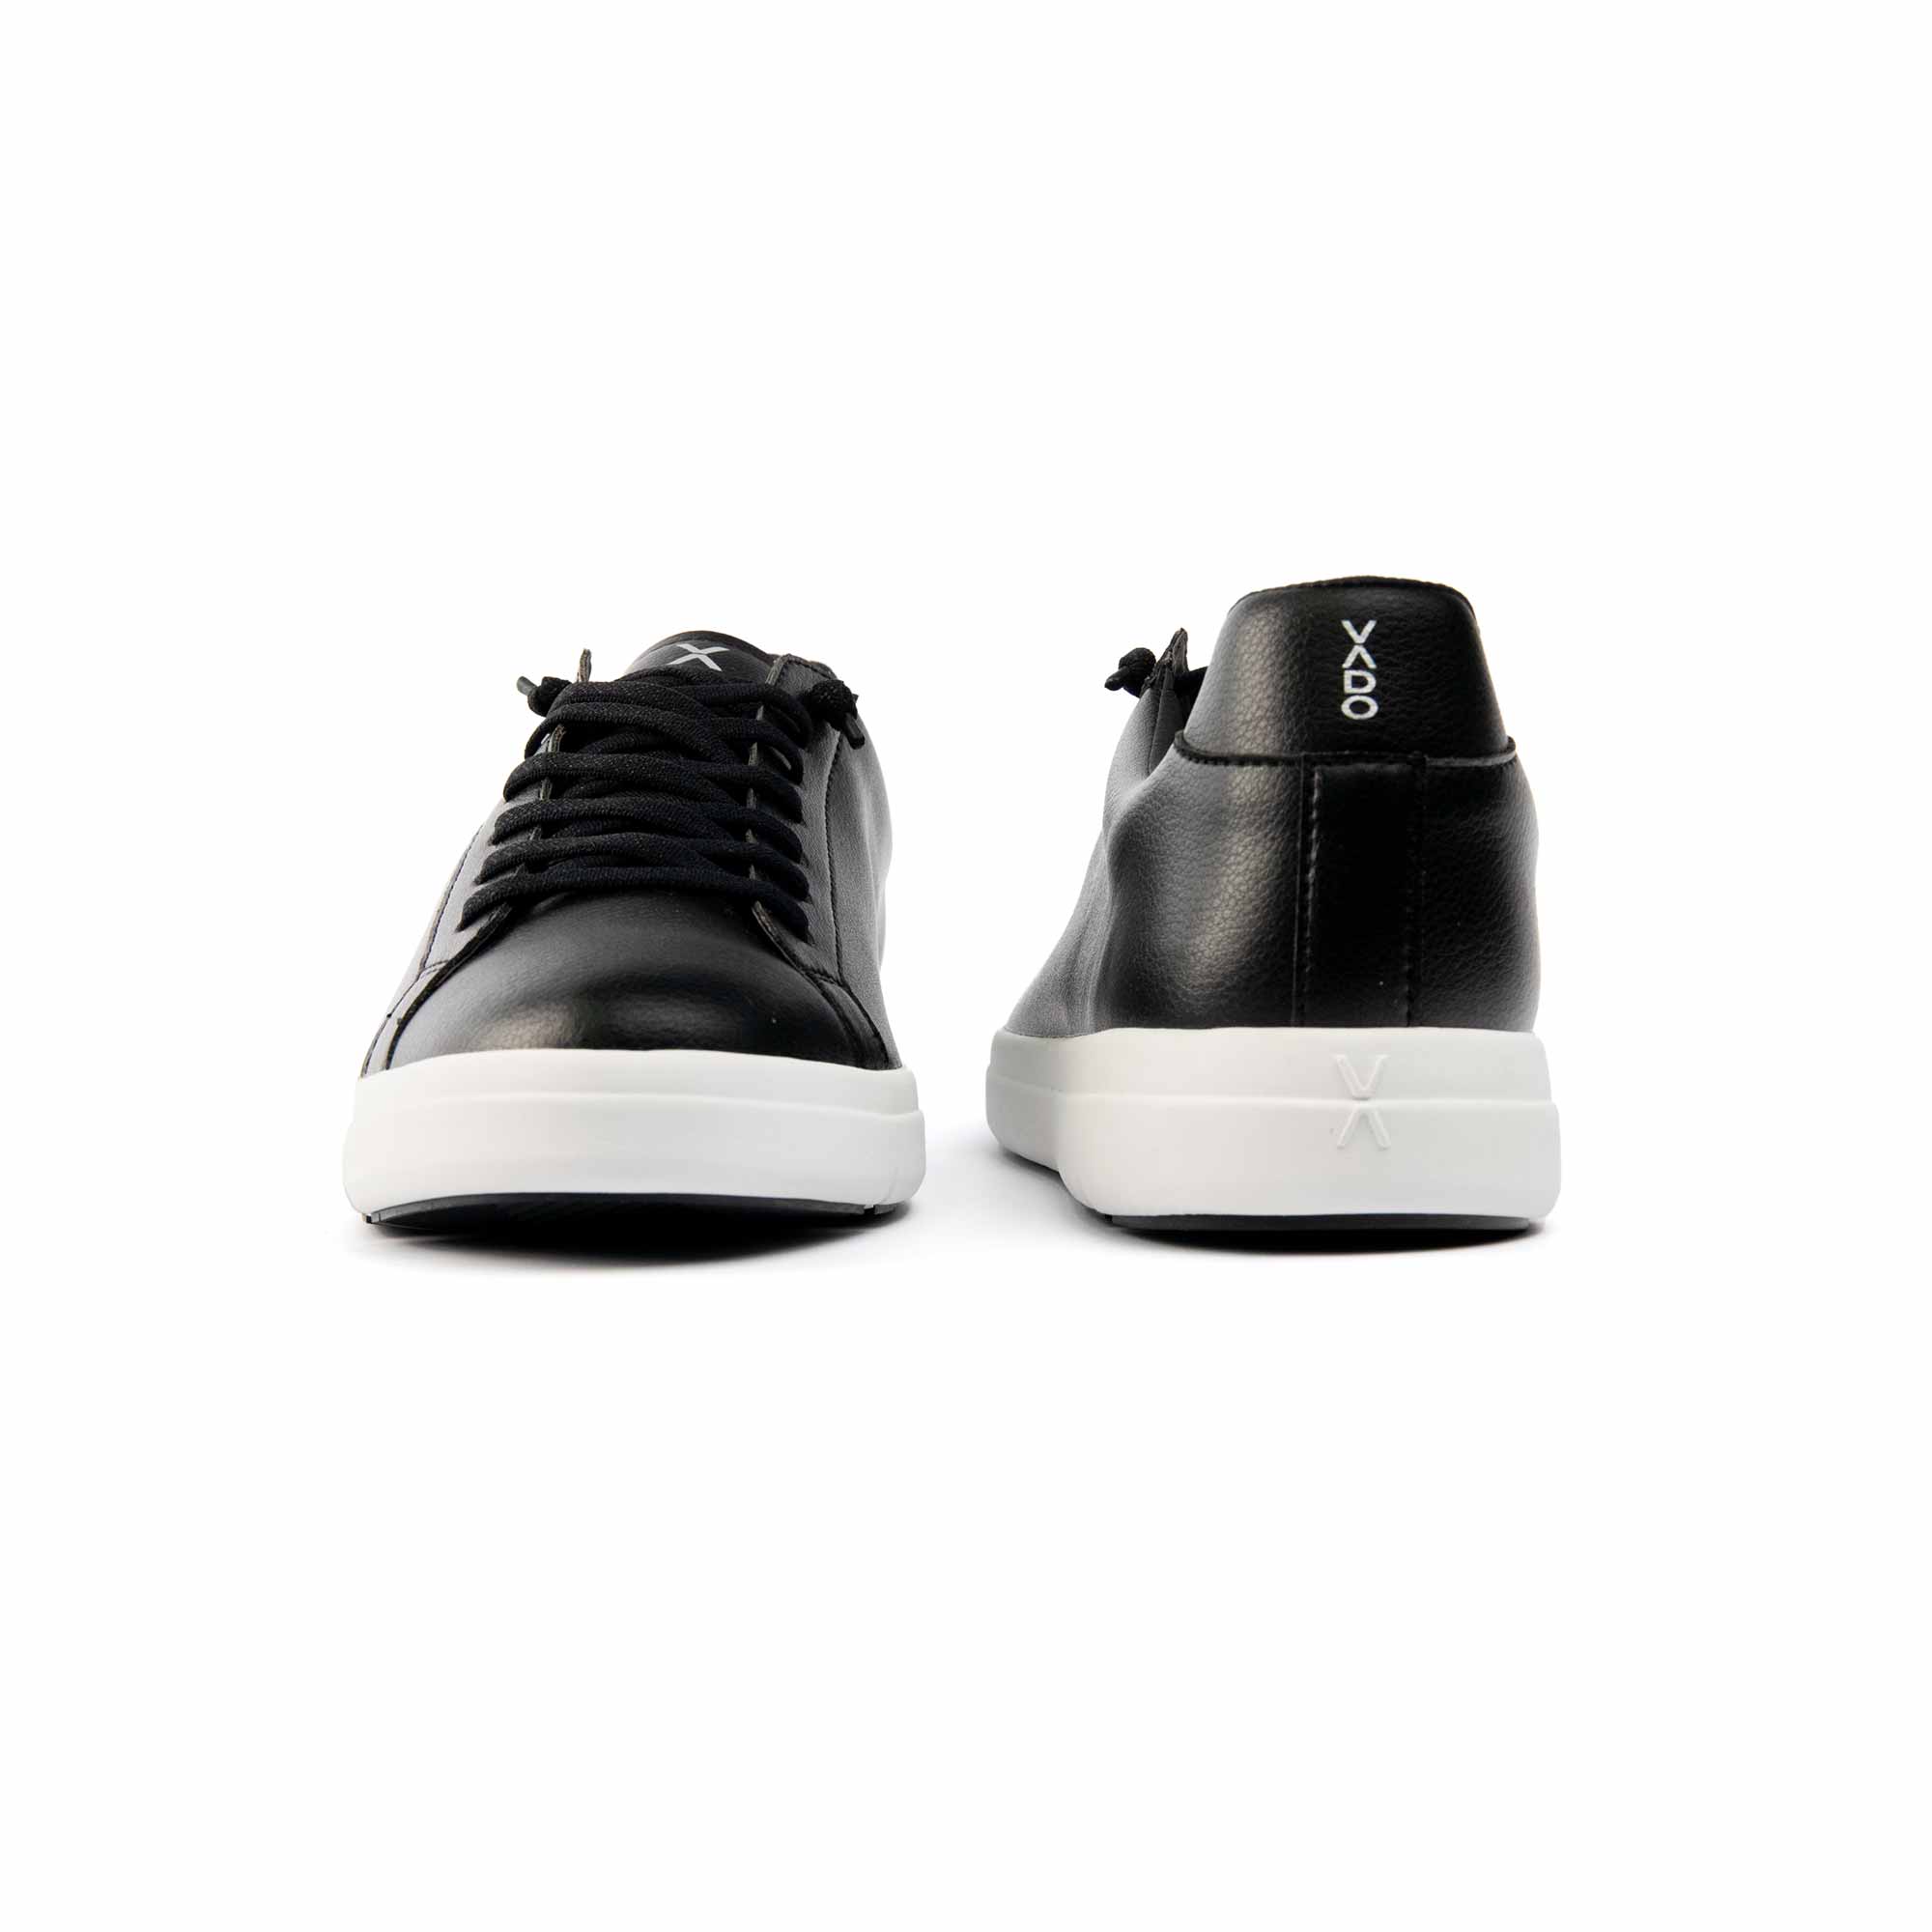 VADO Premium Herren Sneaker schwarz COURT IV Vorder-/ Rückansicht